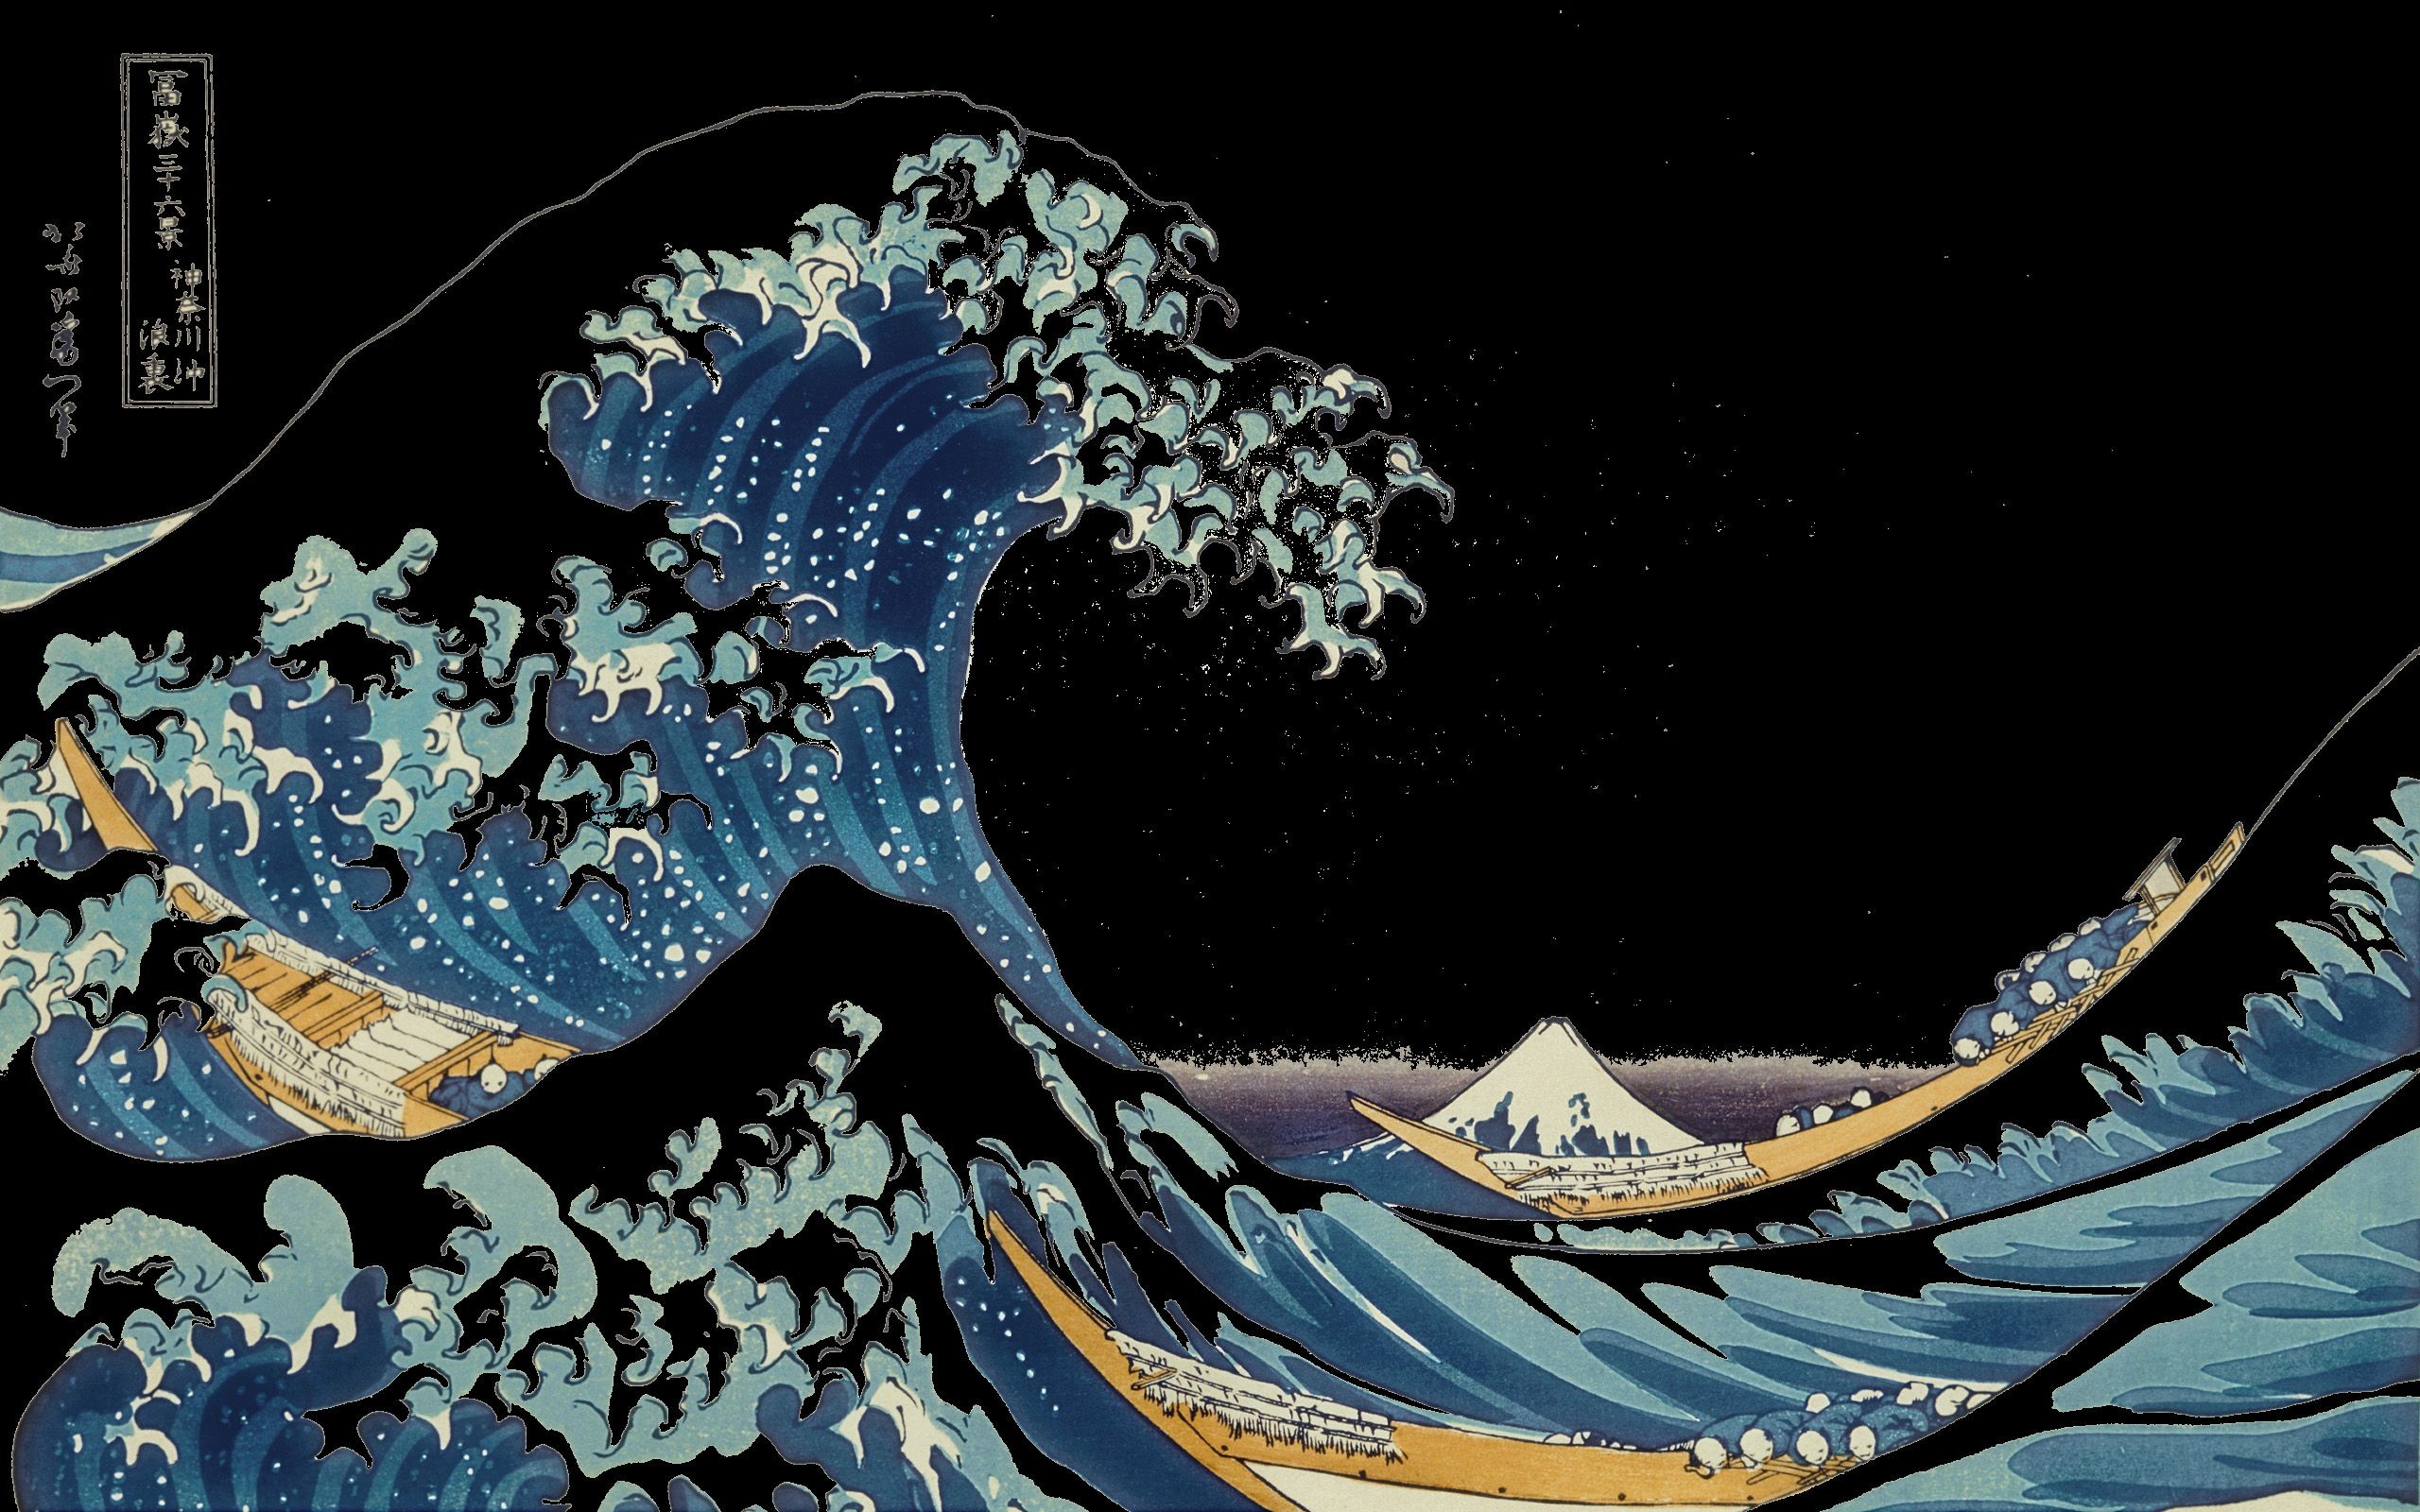 The Great Wave Off Kanagawa Wallpaper ·① WallpaperTag